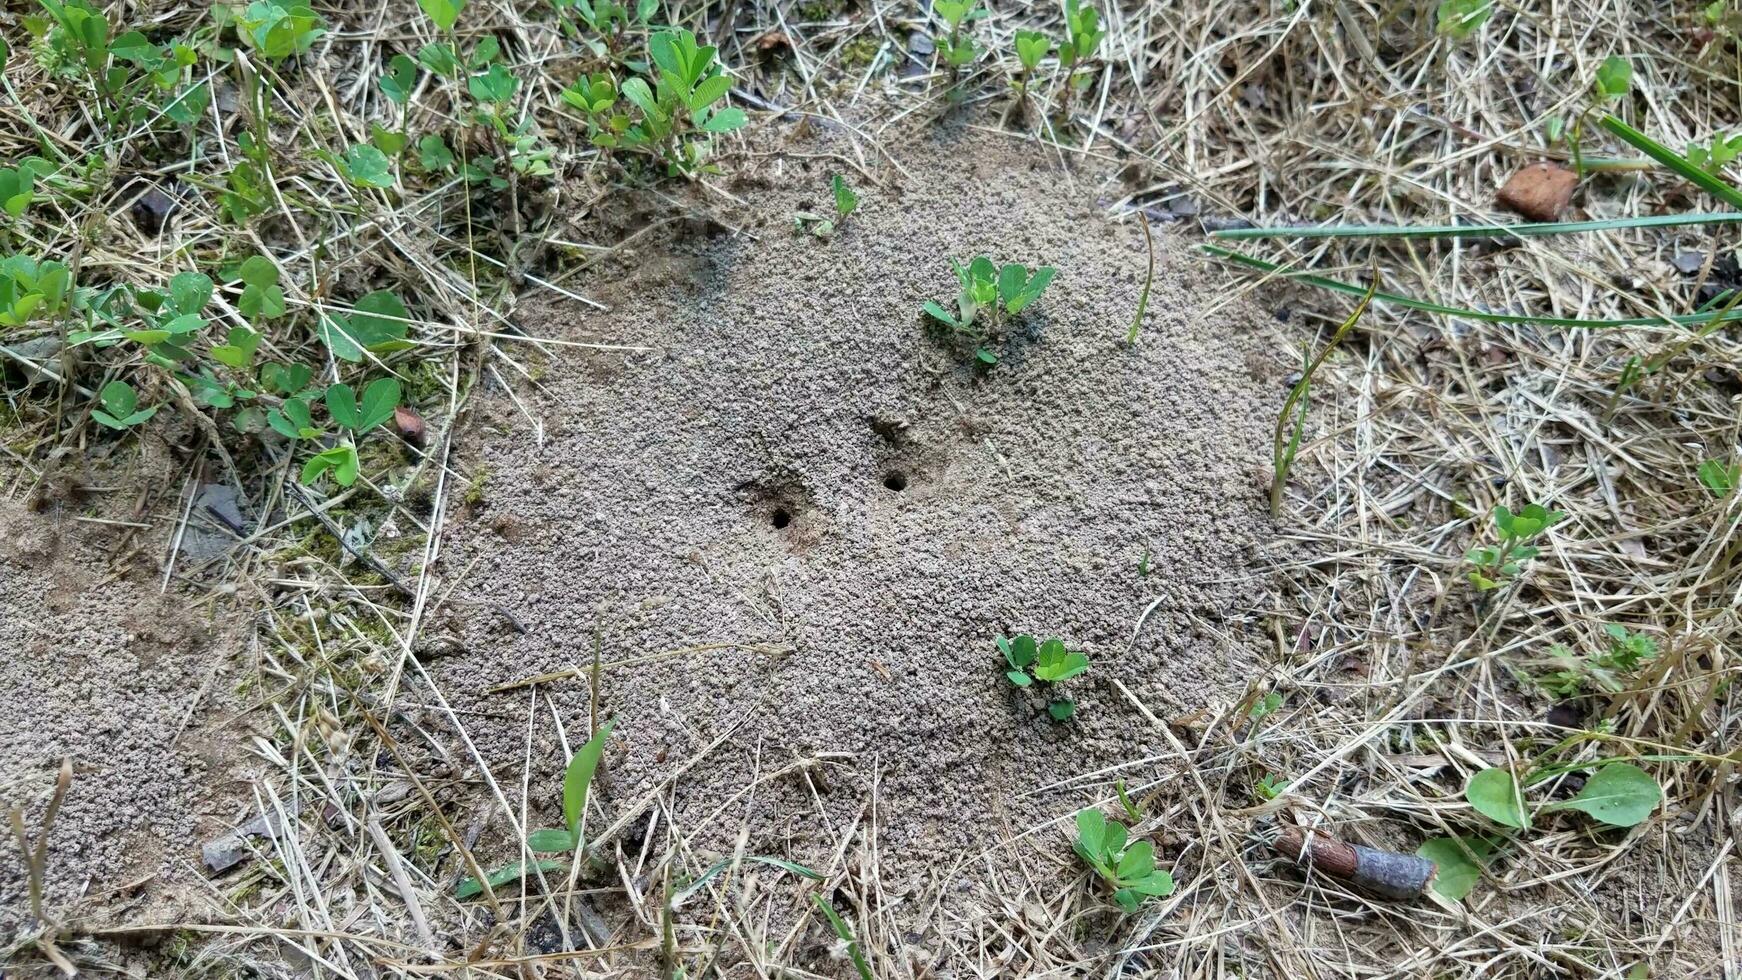 Ameisenhaufen oder Hügel im Dreck mit Gras oder Rasen foto